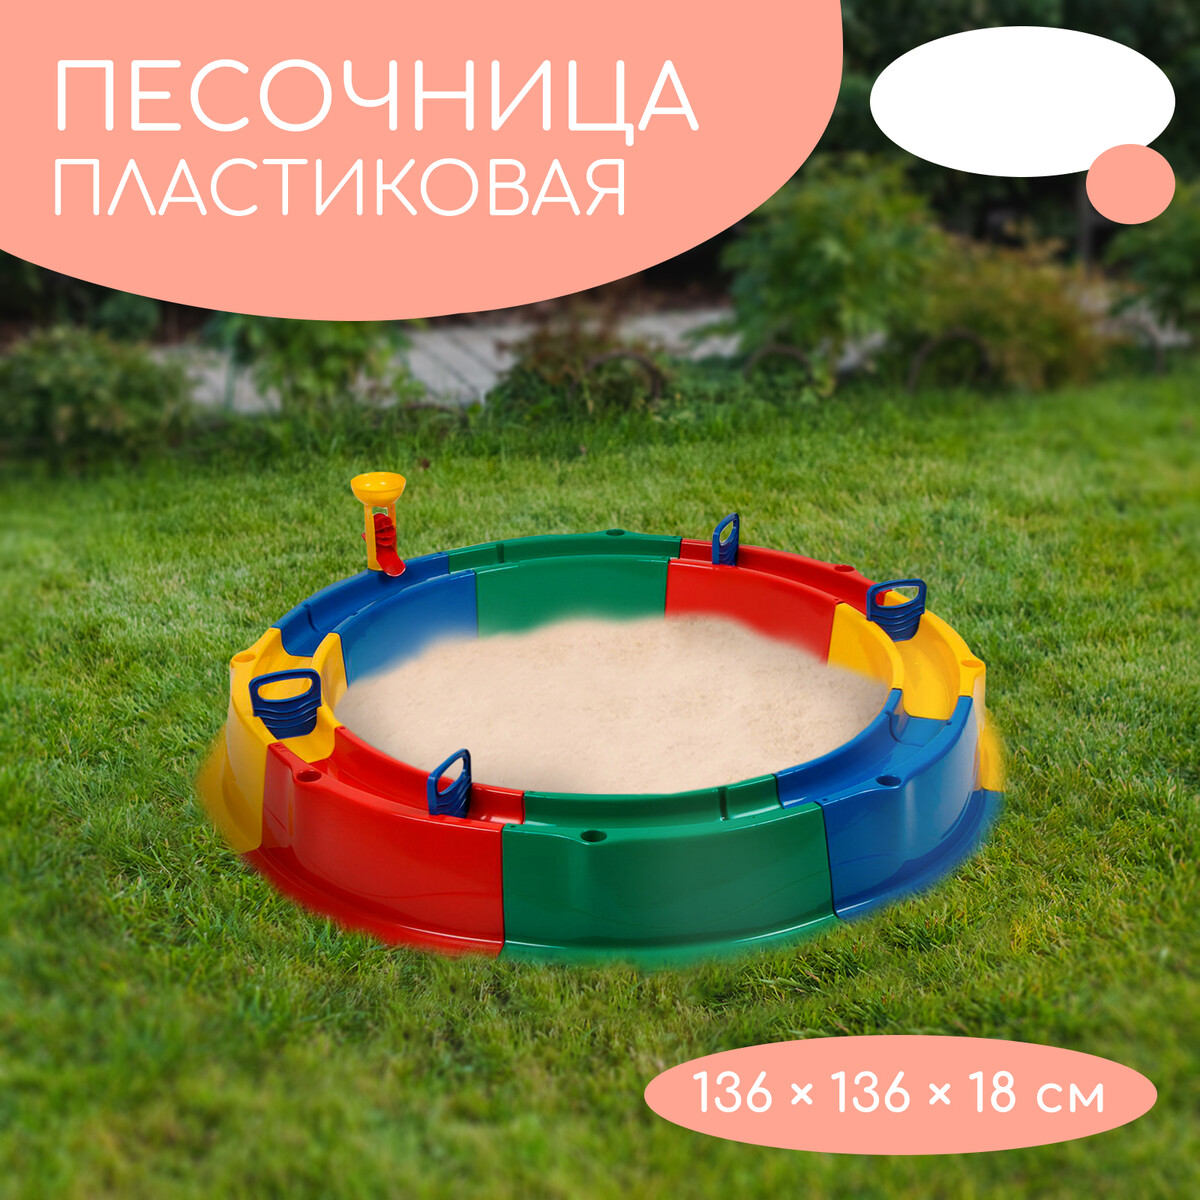 Песочница детская пластиковая, 136 × 136 × 18 см, с набором для игр, No brand, цвет разноцветный